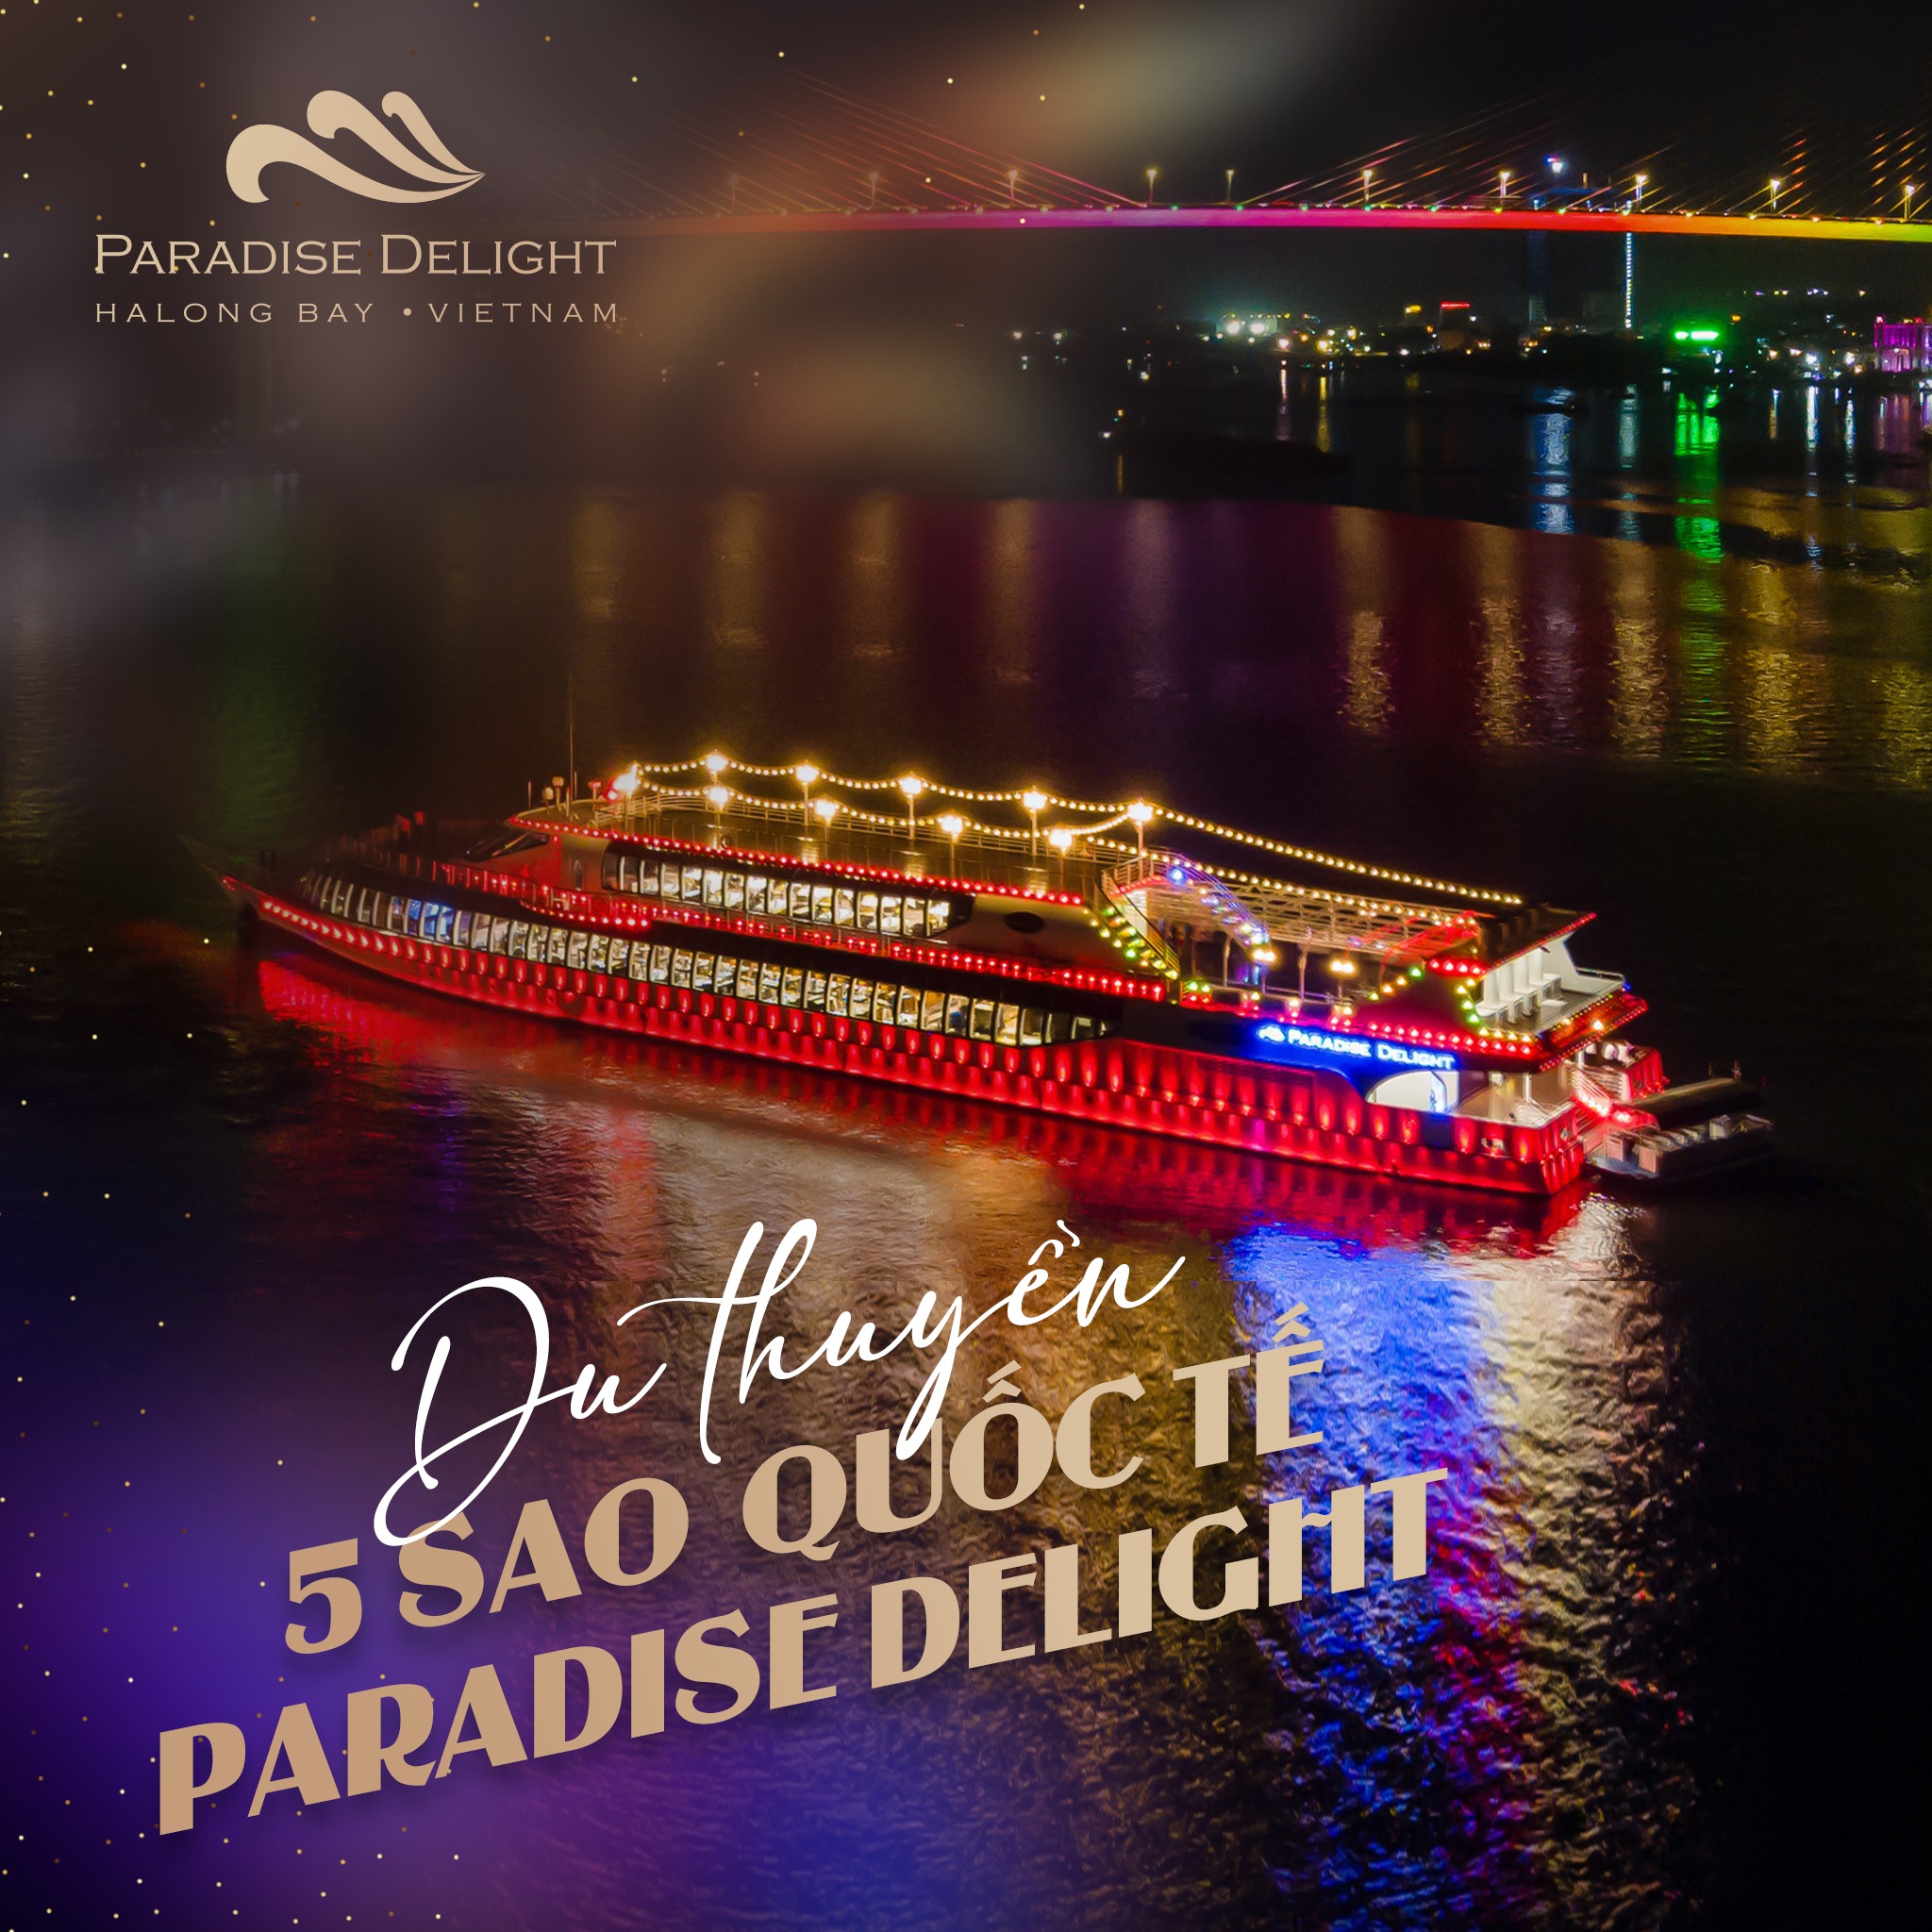 Liveshow Phương Phương Thảo trên Du thuyền nhà hàng Paradise Delight - Vịnh Hạ Long